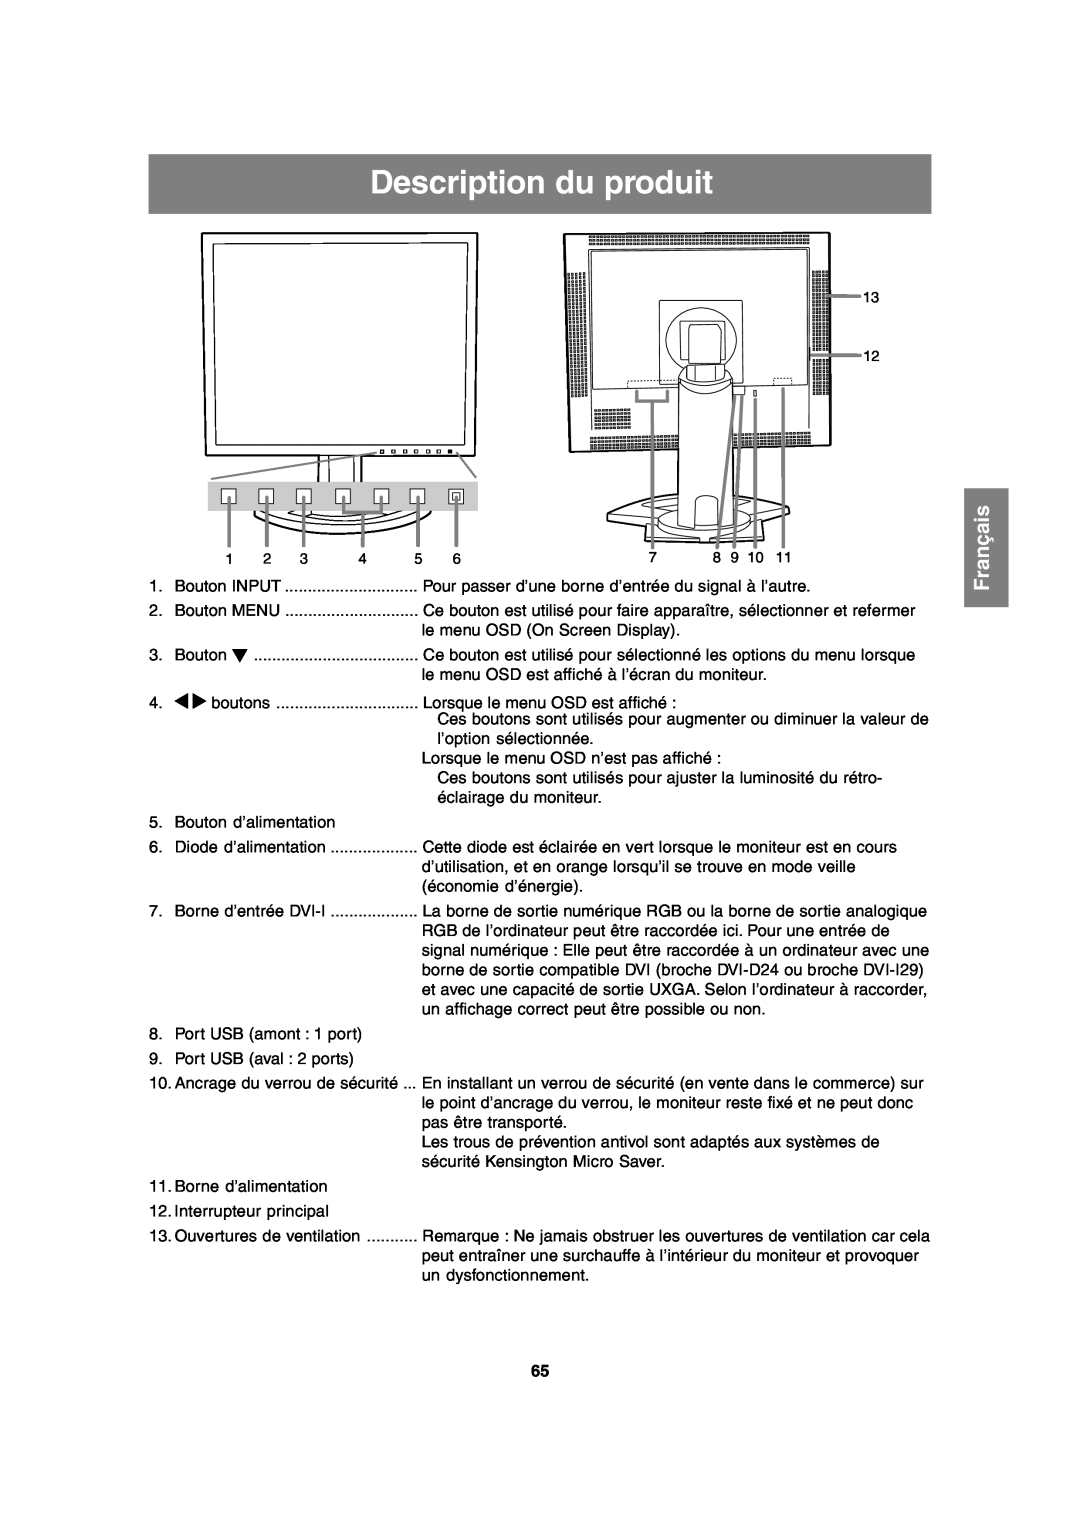 Sharp LL-T2020 operation manual Description du produit, Français 